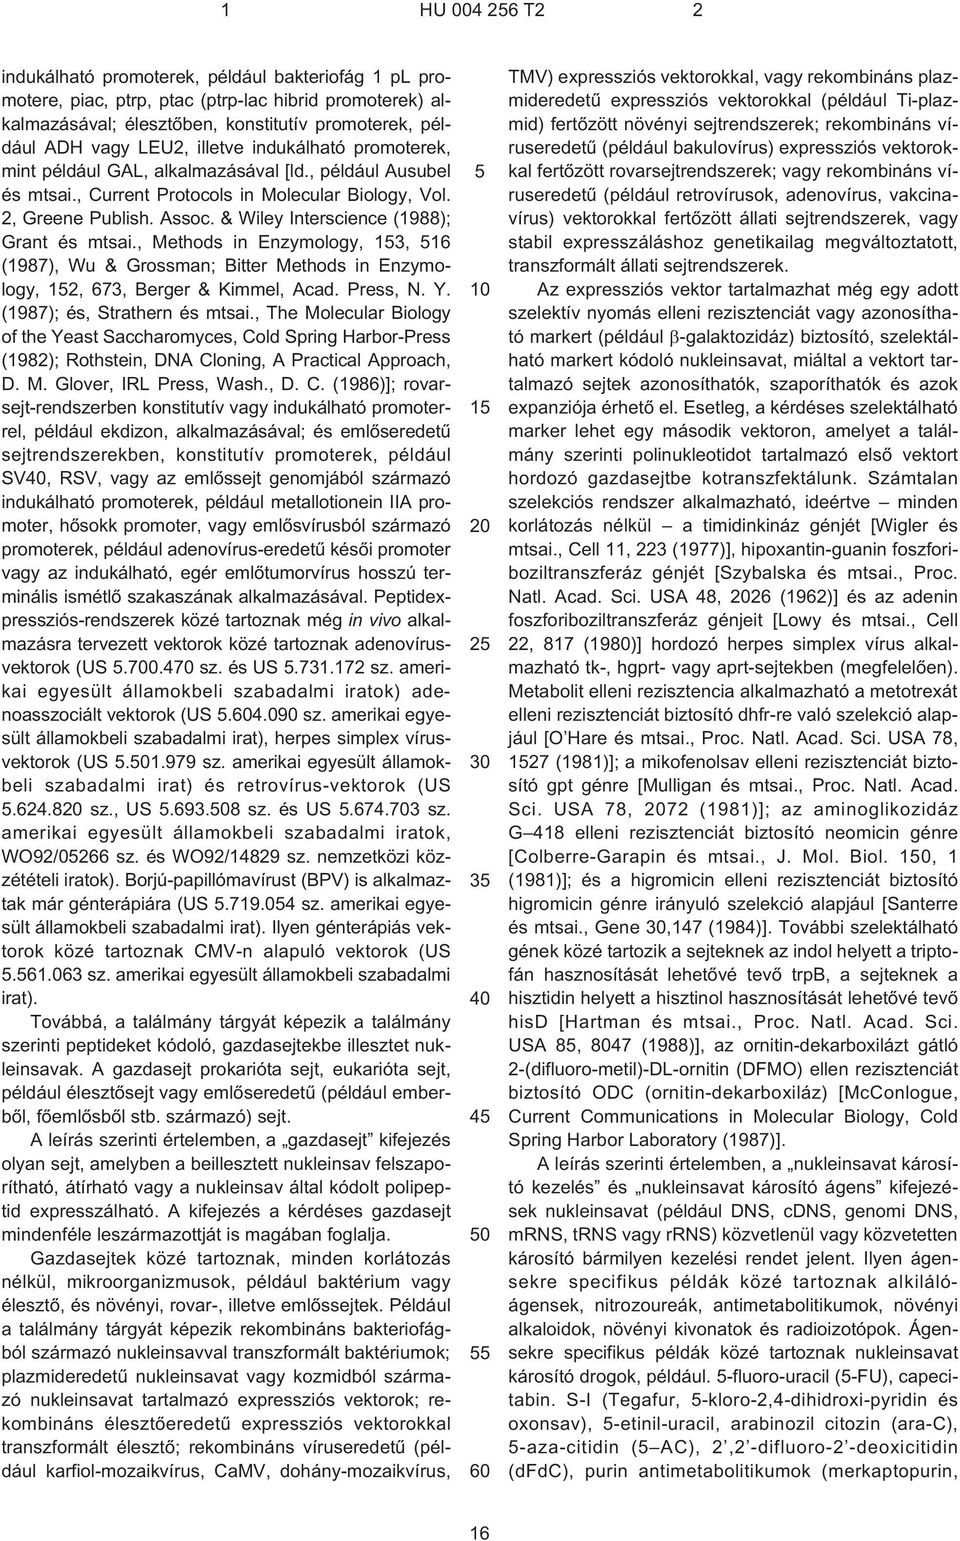 & Wiley Interscience (1988); Grant és mtsai., Methods in Enzymology, 3, 16 (1987), Wu & Grossman; Bitter Methods in Enzymology, 2, 673, Berger & Kimmel, Acad. Press, N. Y.